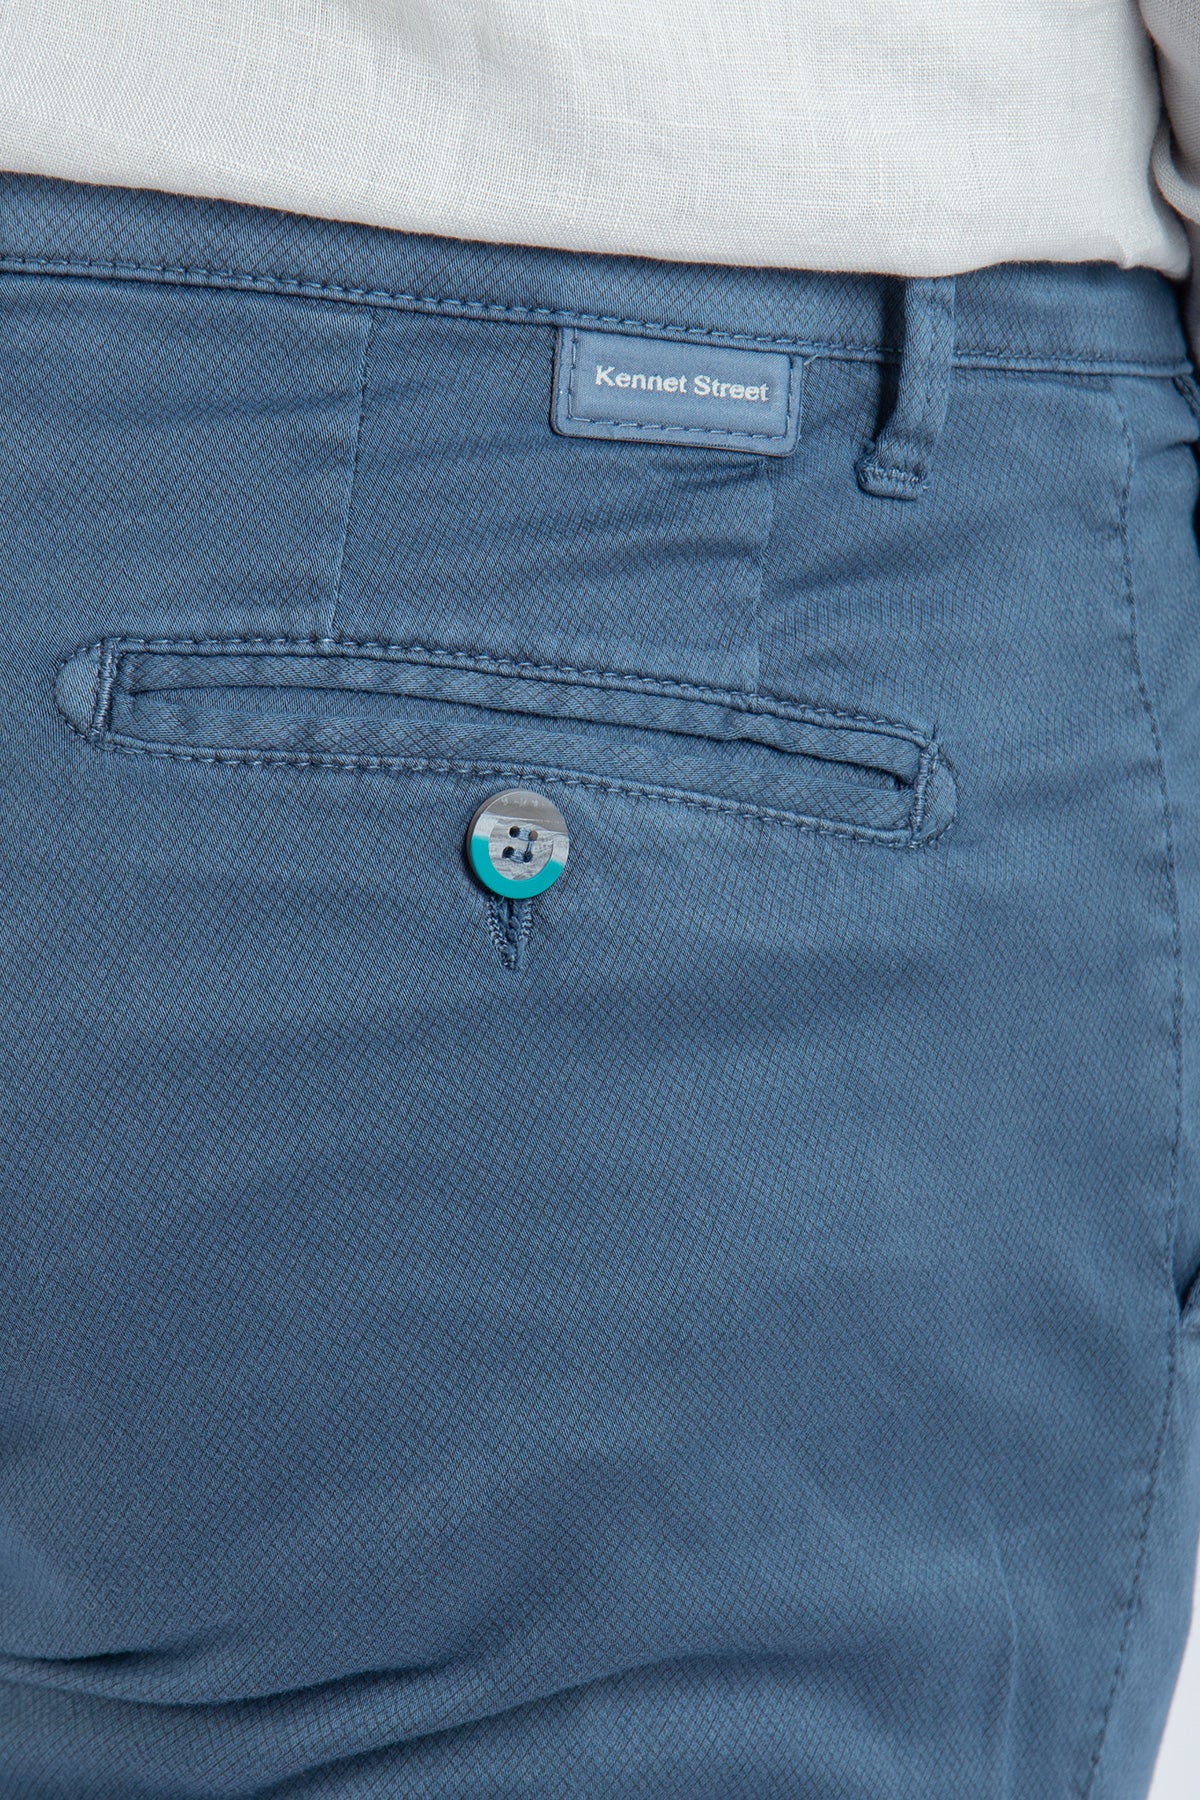 Pantalone in cotone stretch microstampa